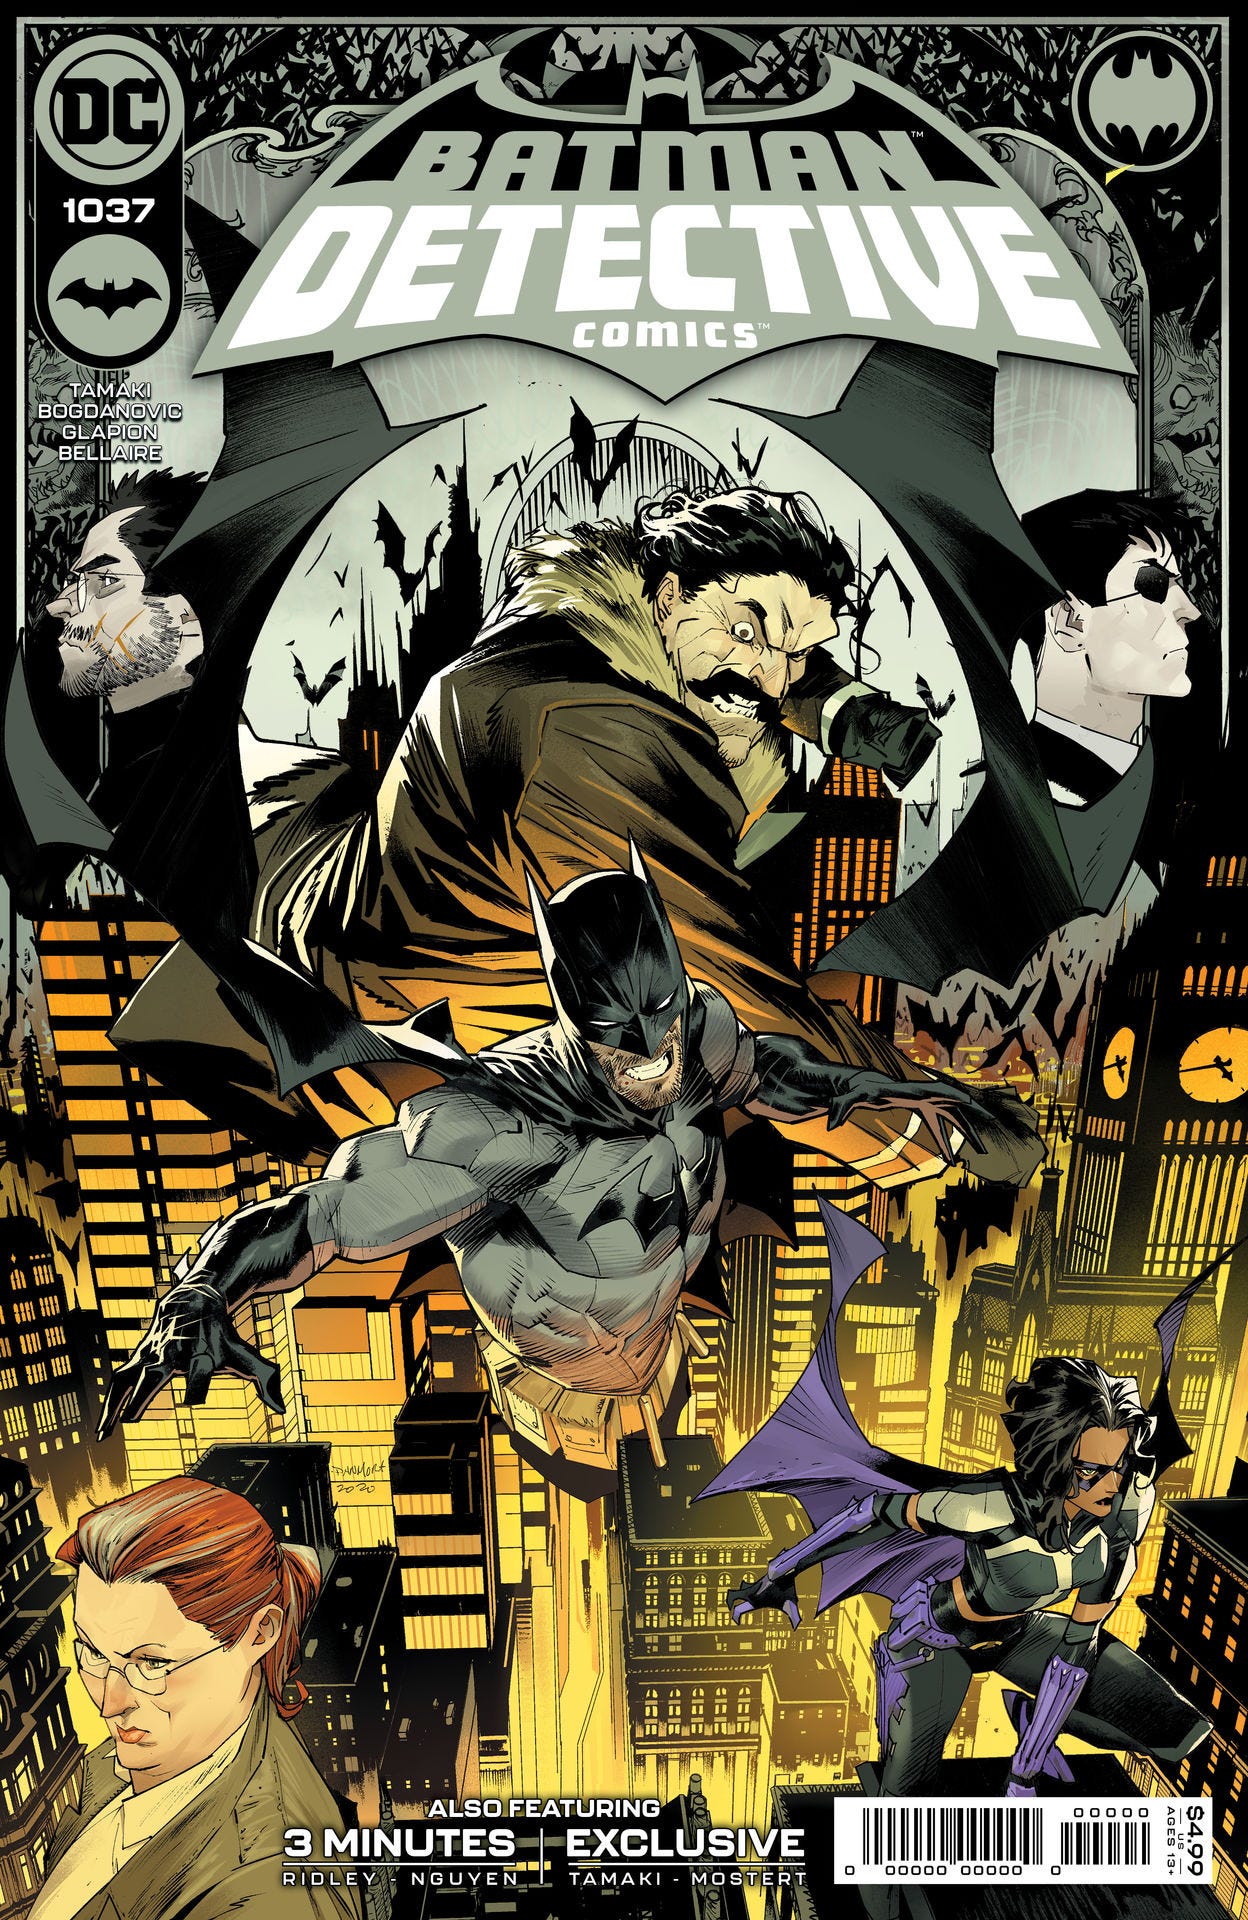 Detective Comics #1037 (Cover A - Dan Mora)